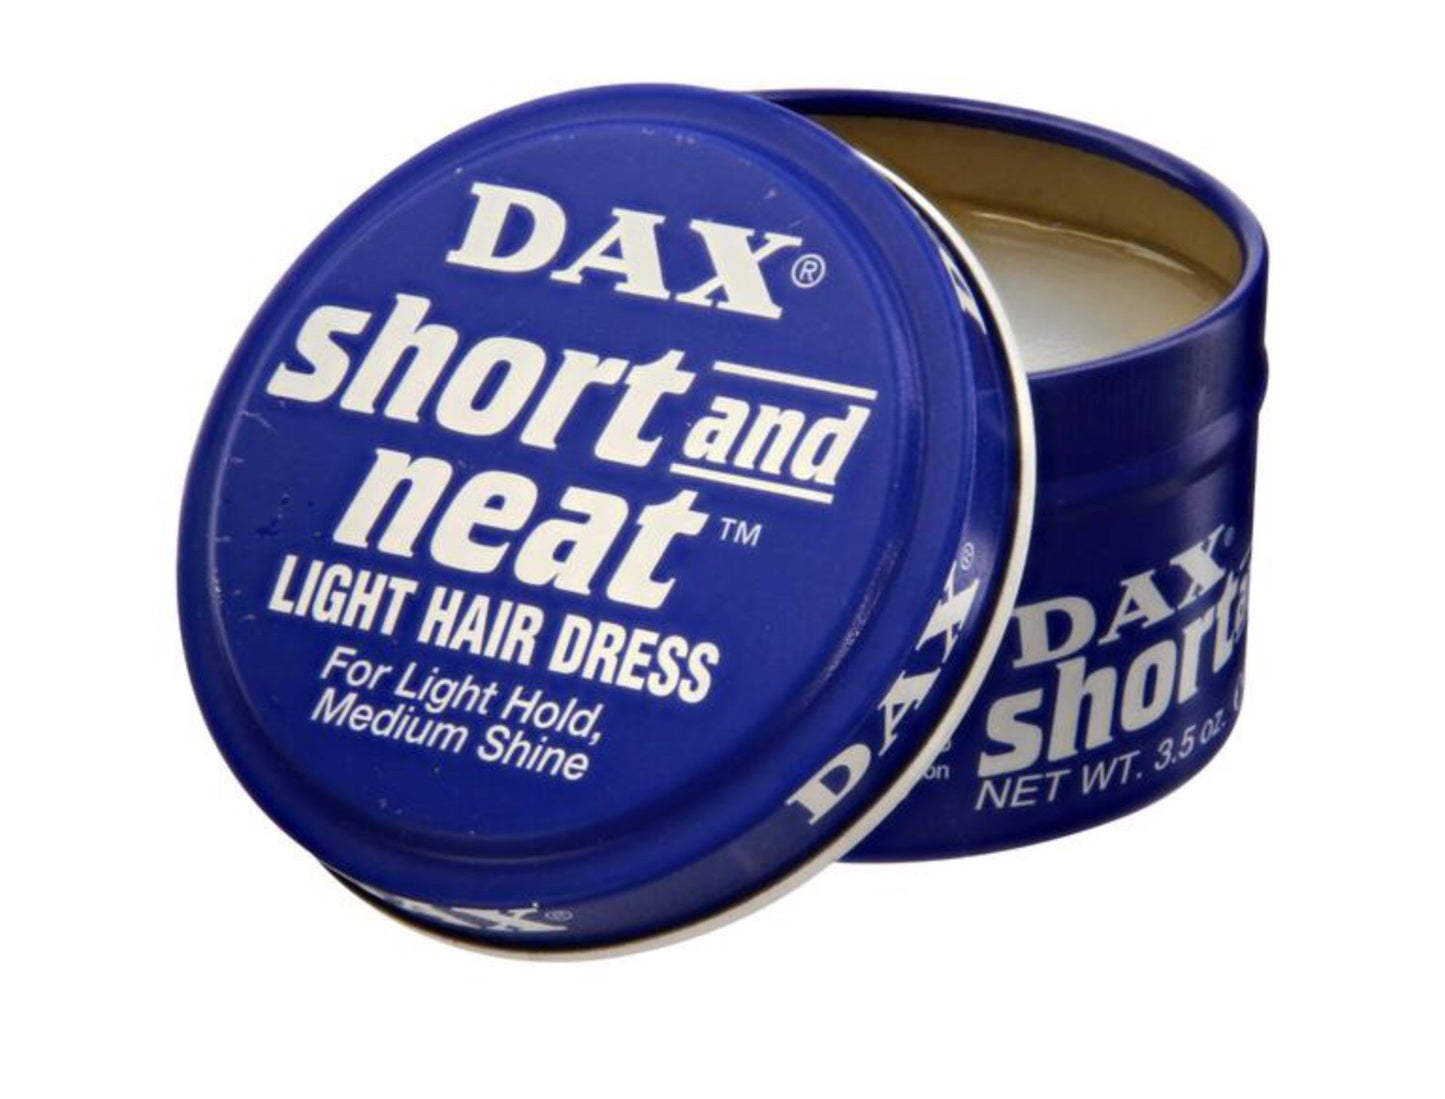 DAX Short & Neat Light Hair Dress